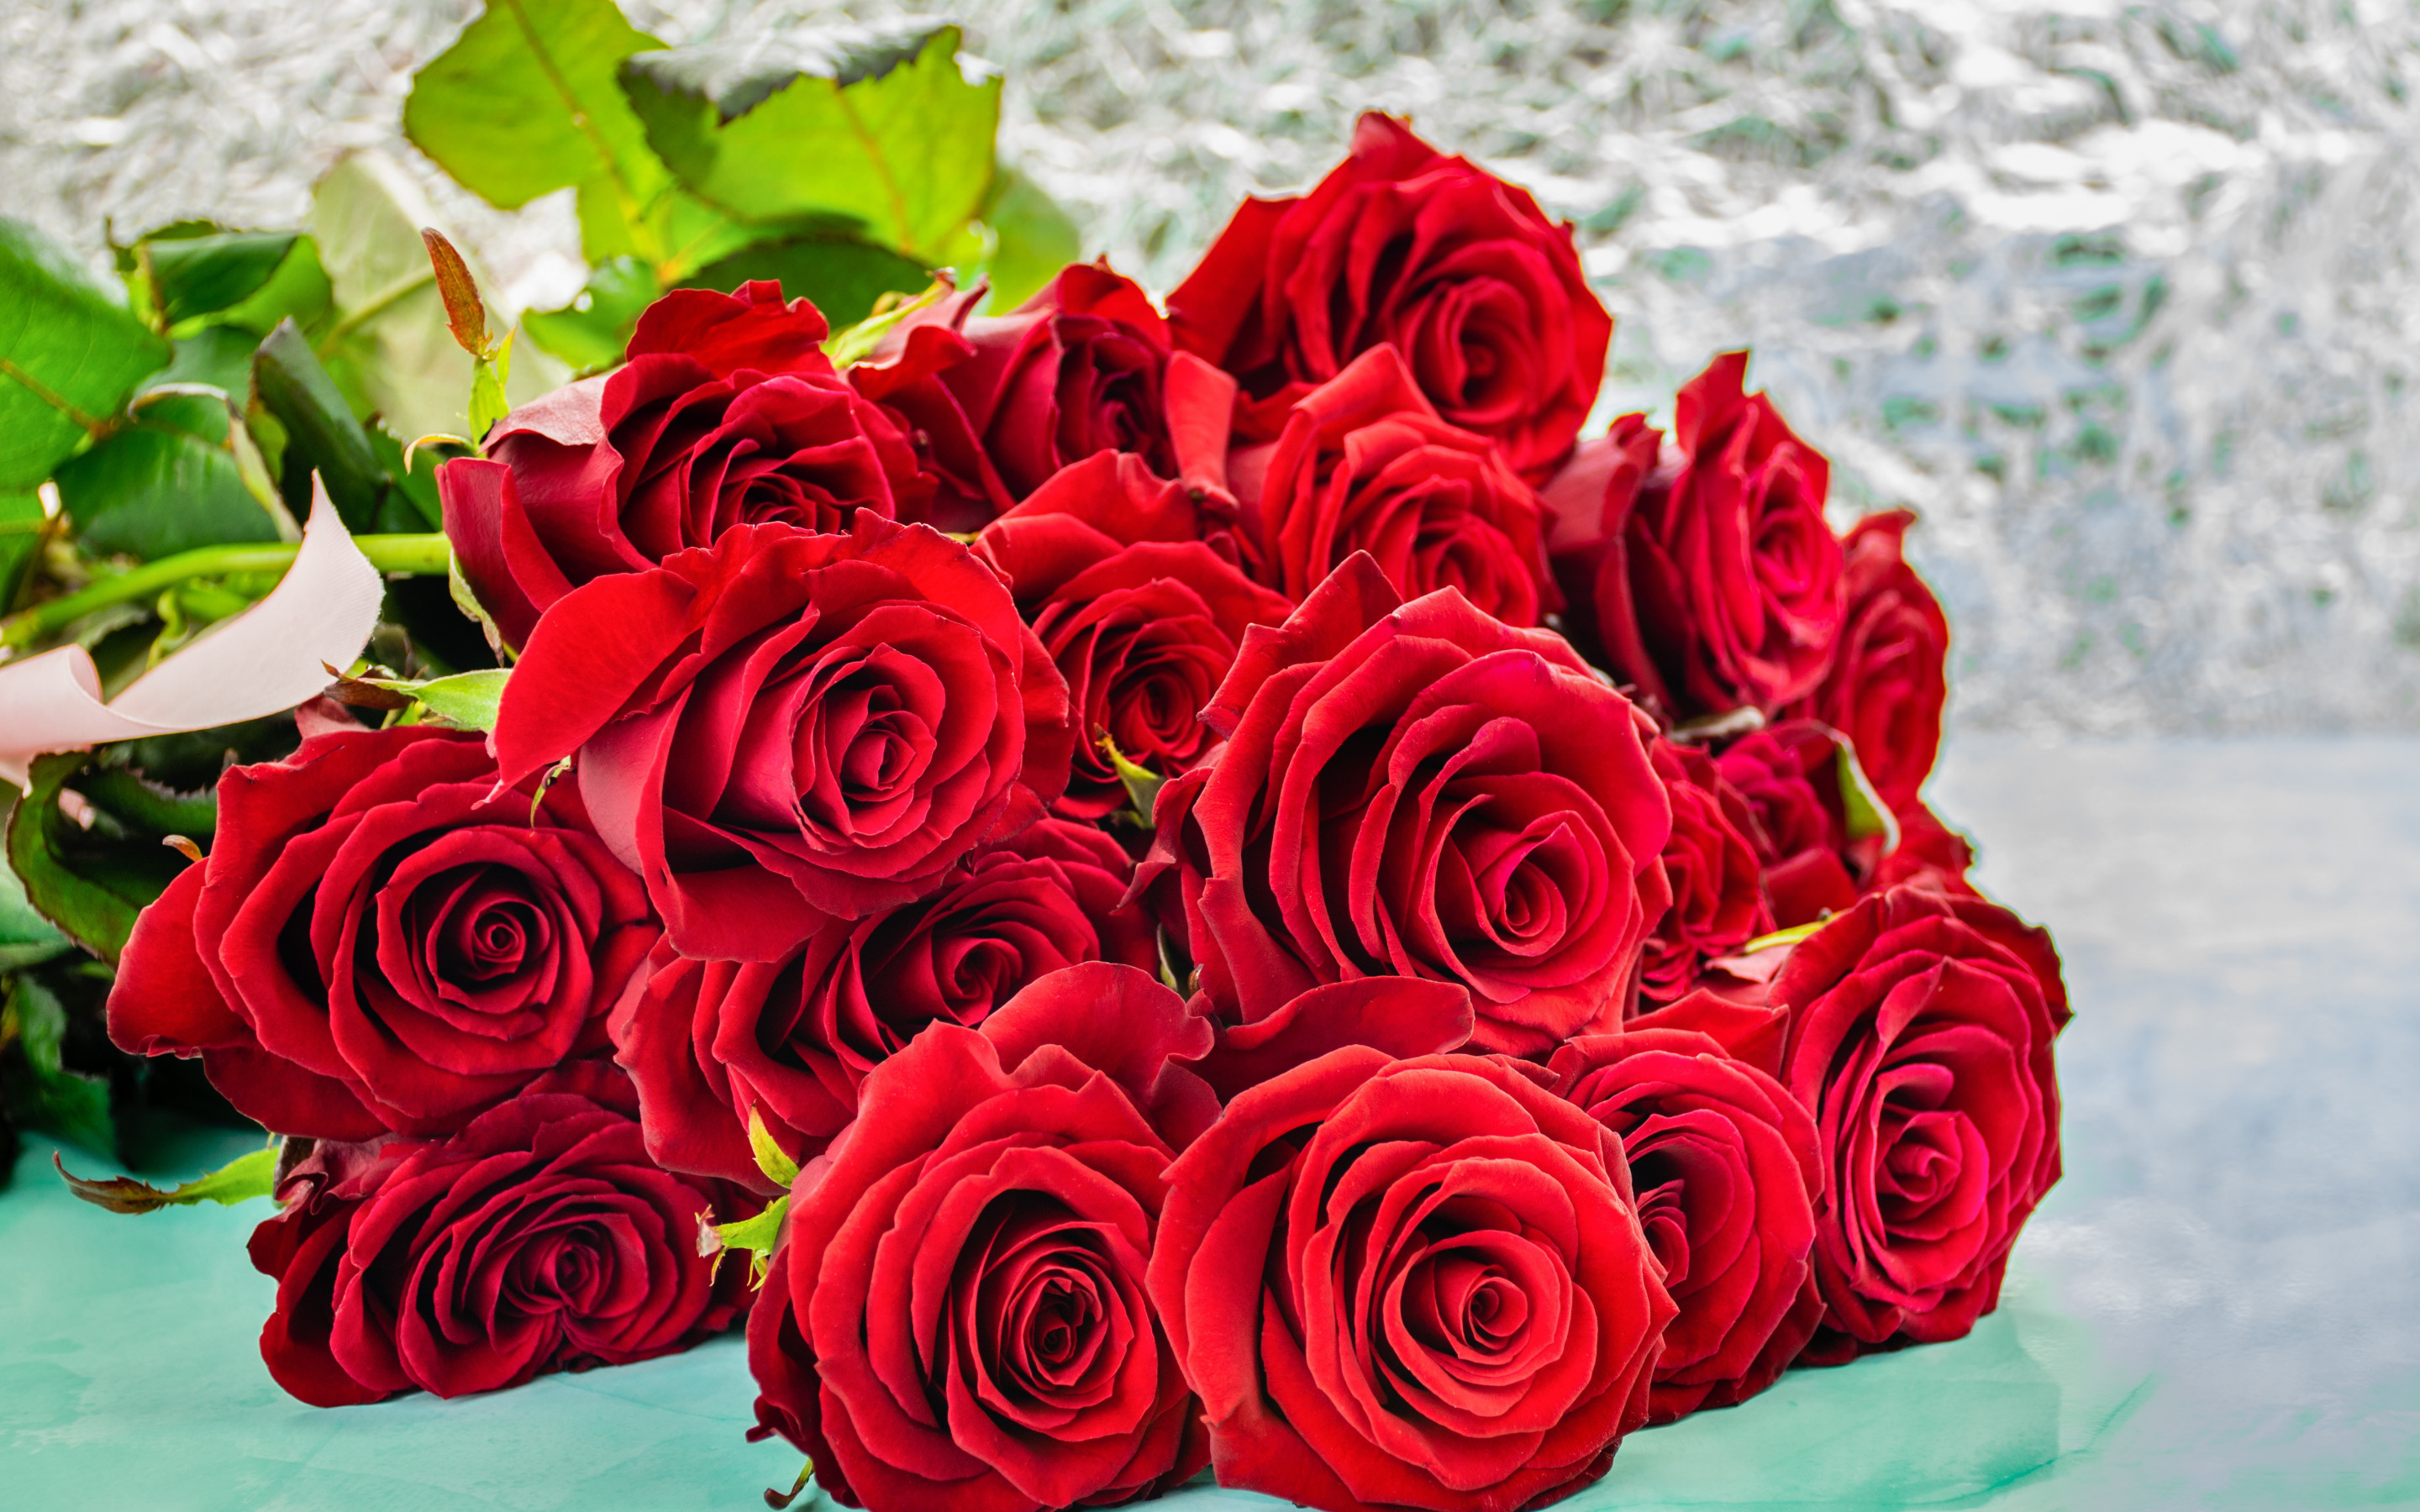 Роз оо. Красивый букет роз. Букет алых роз. Шикарный букет роз. Красные розы.